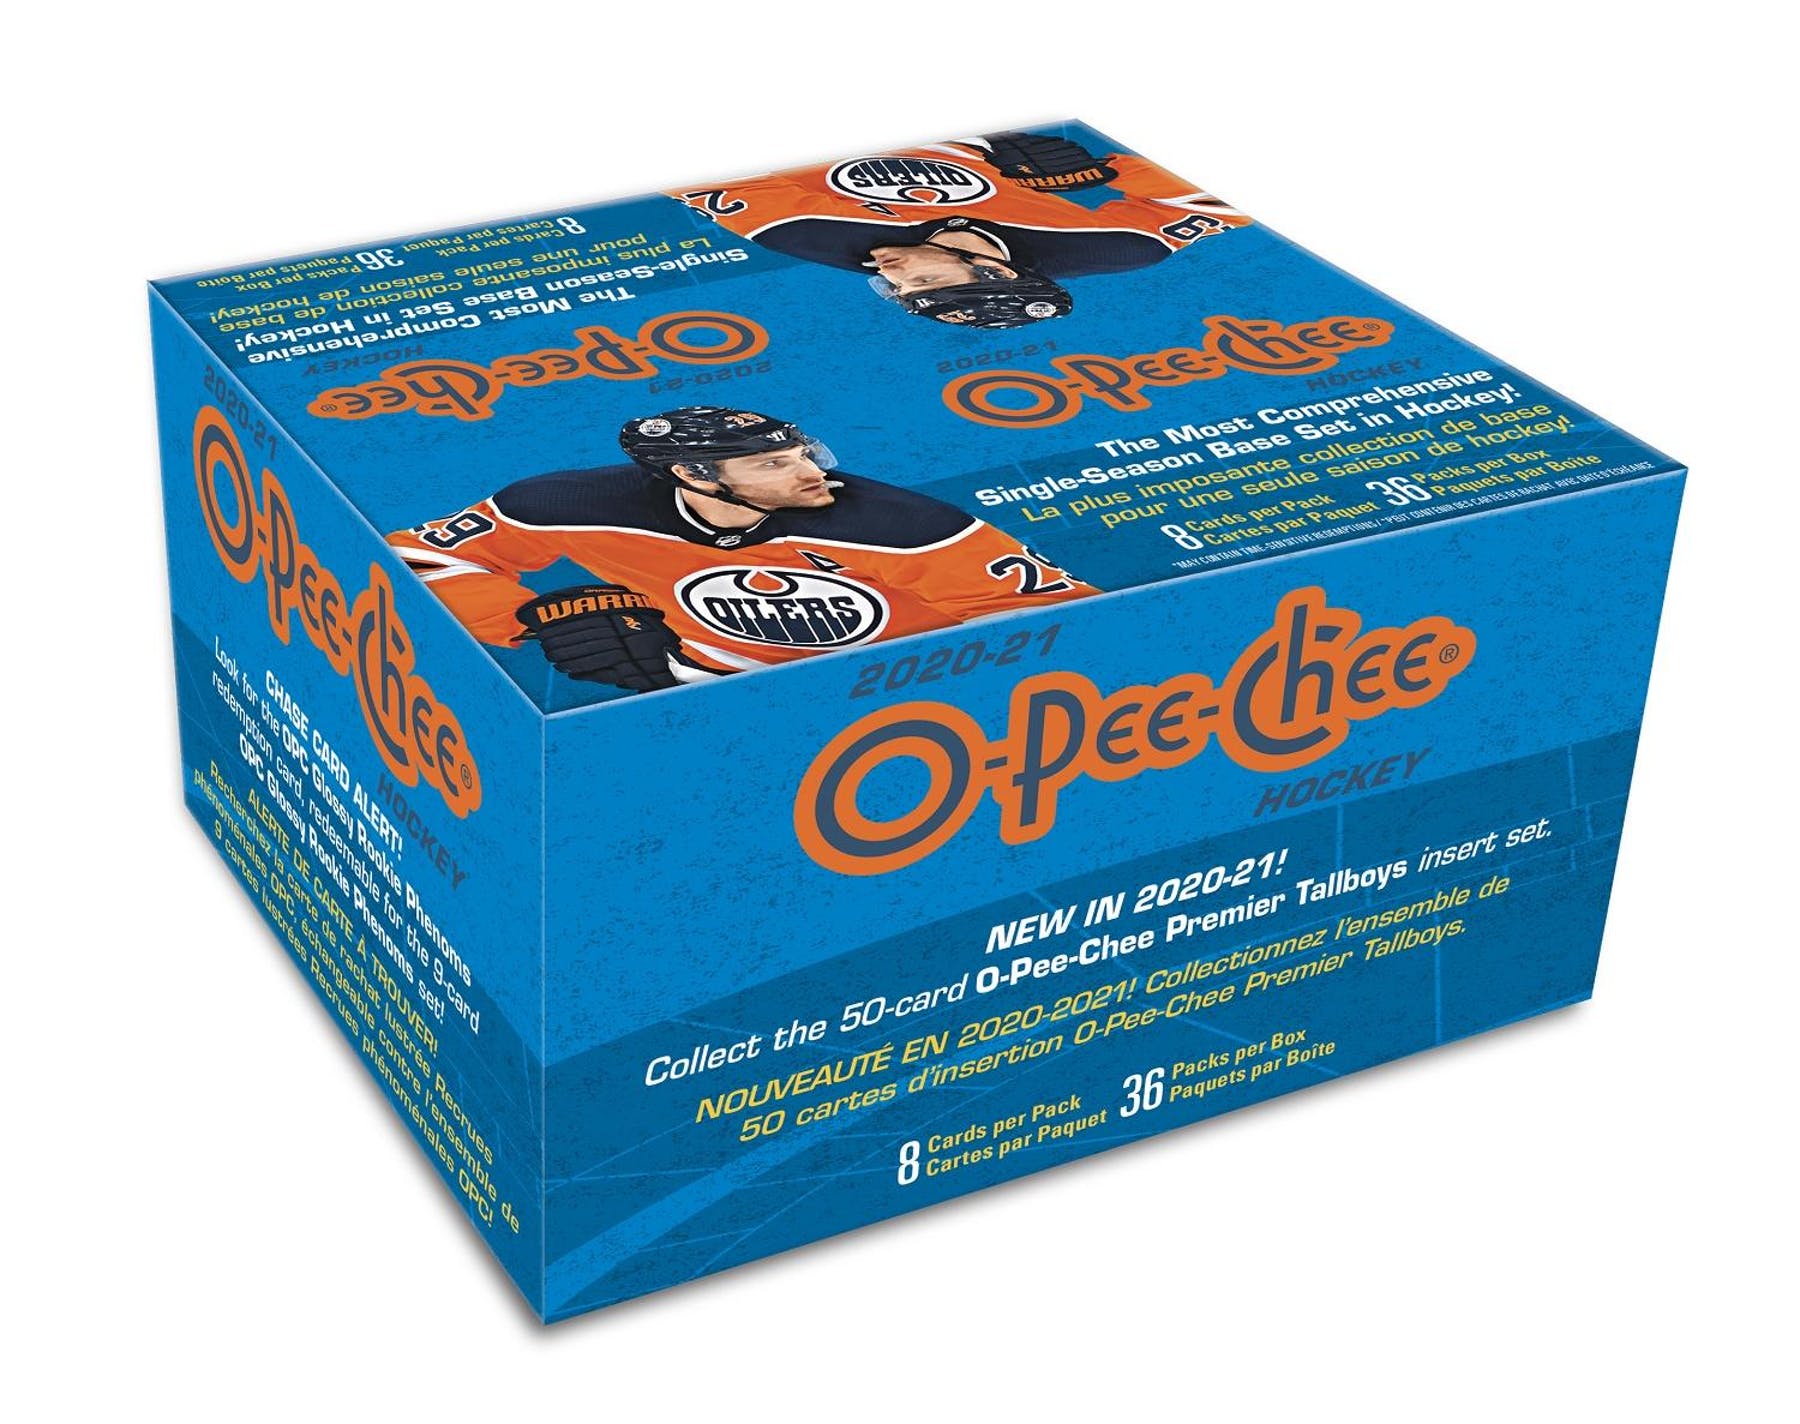 2020-21 Upper Deck O-Pee-Chee Hockey Retail Box